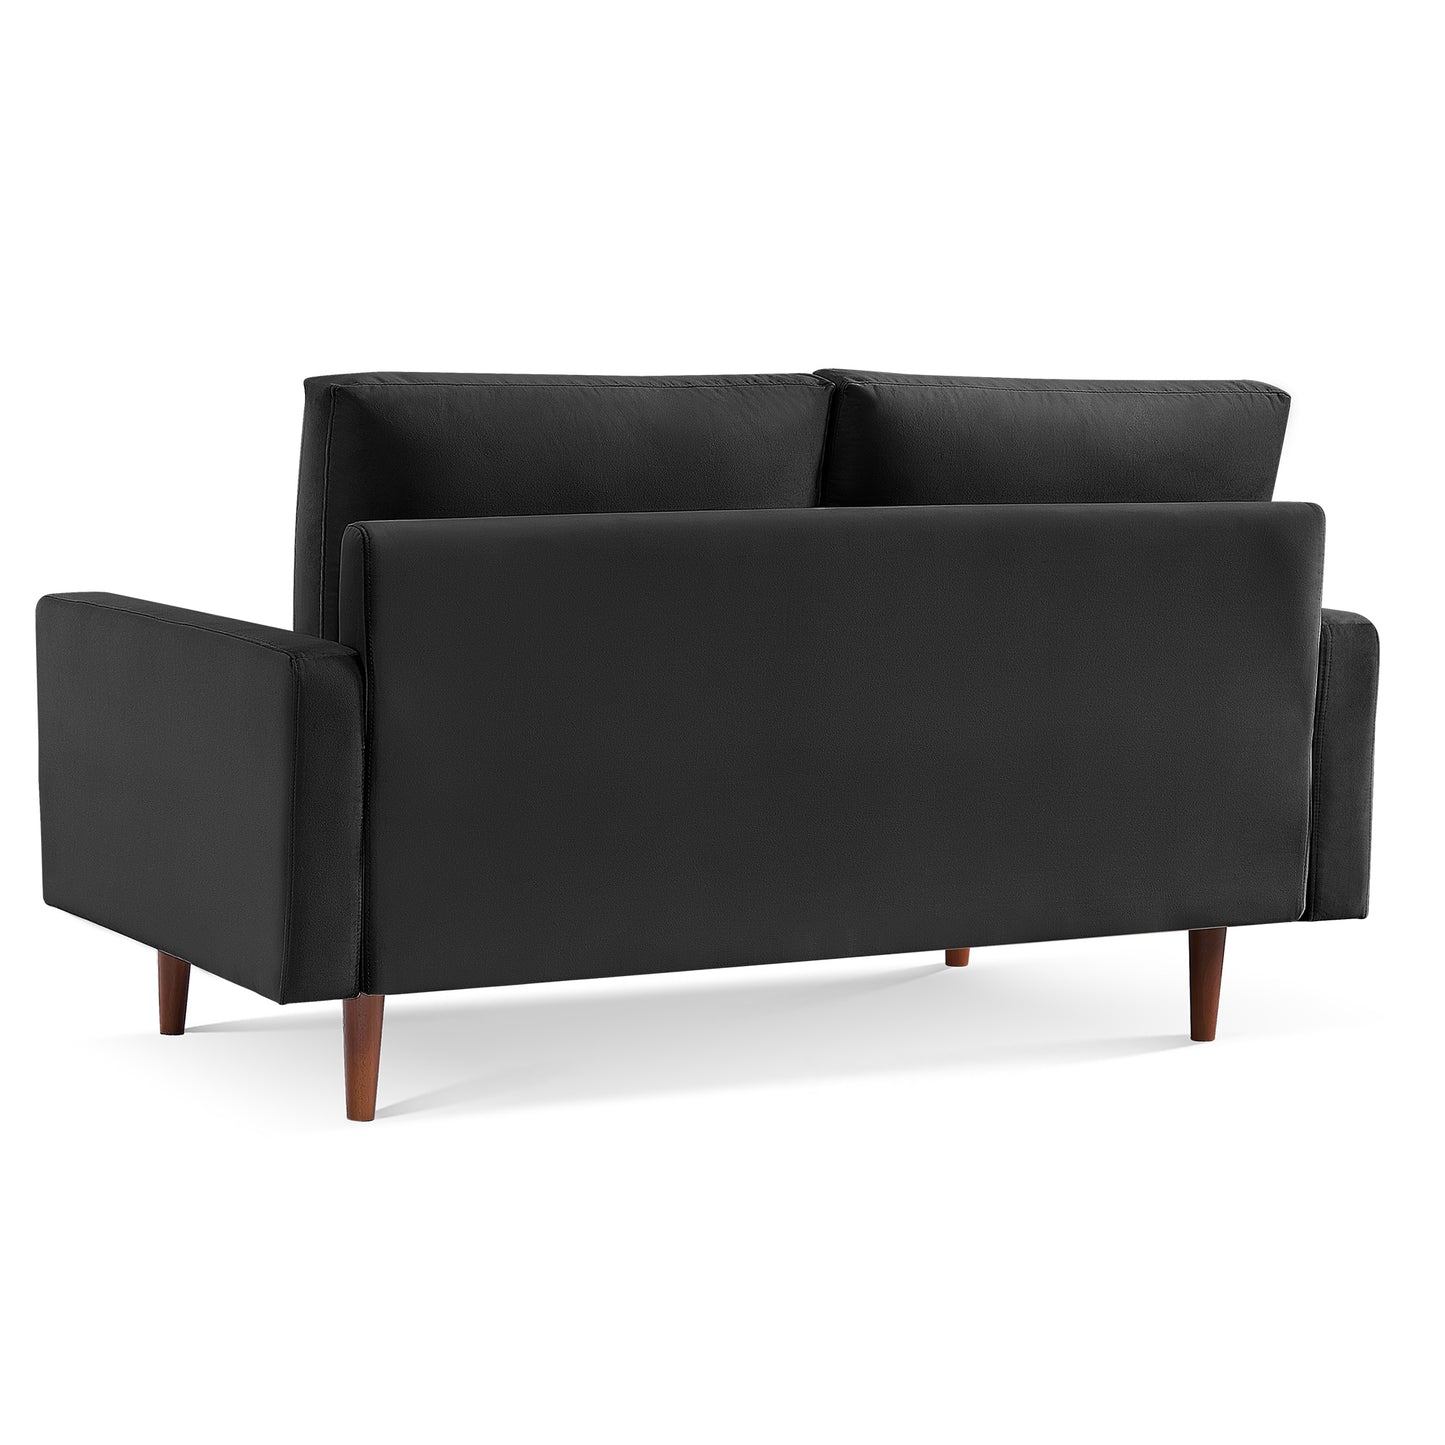 69" Black Velvet Sofa With Dark Brown Legs